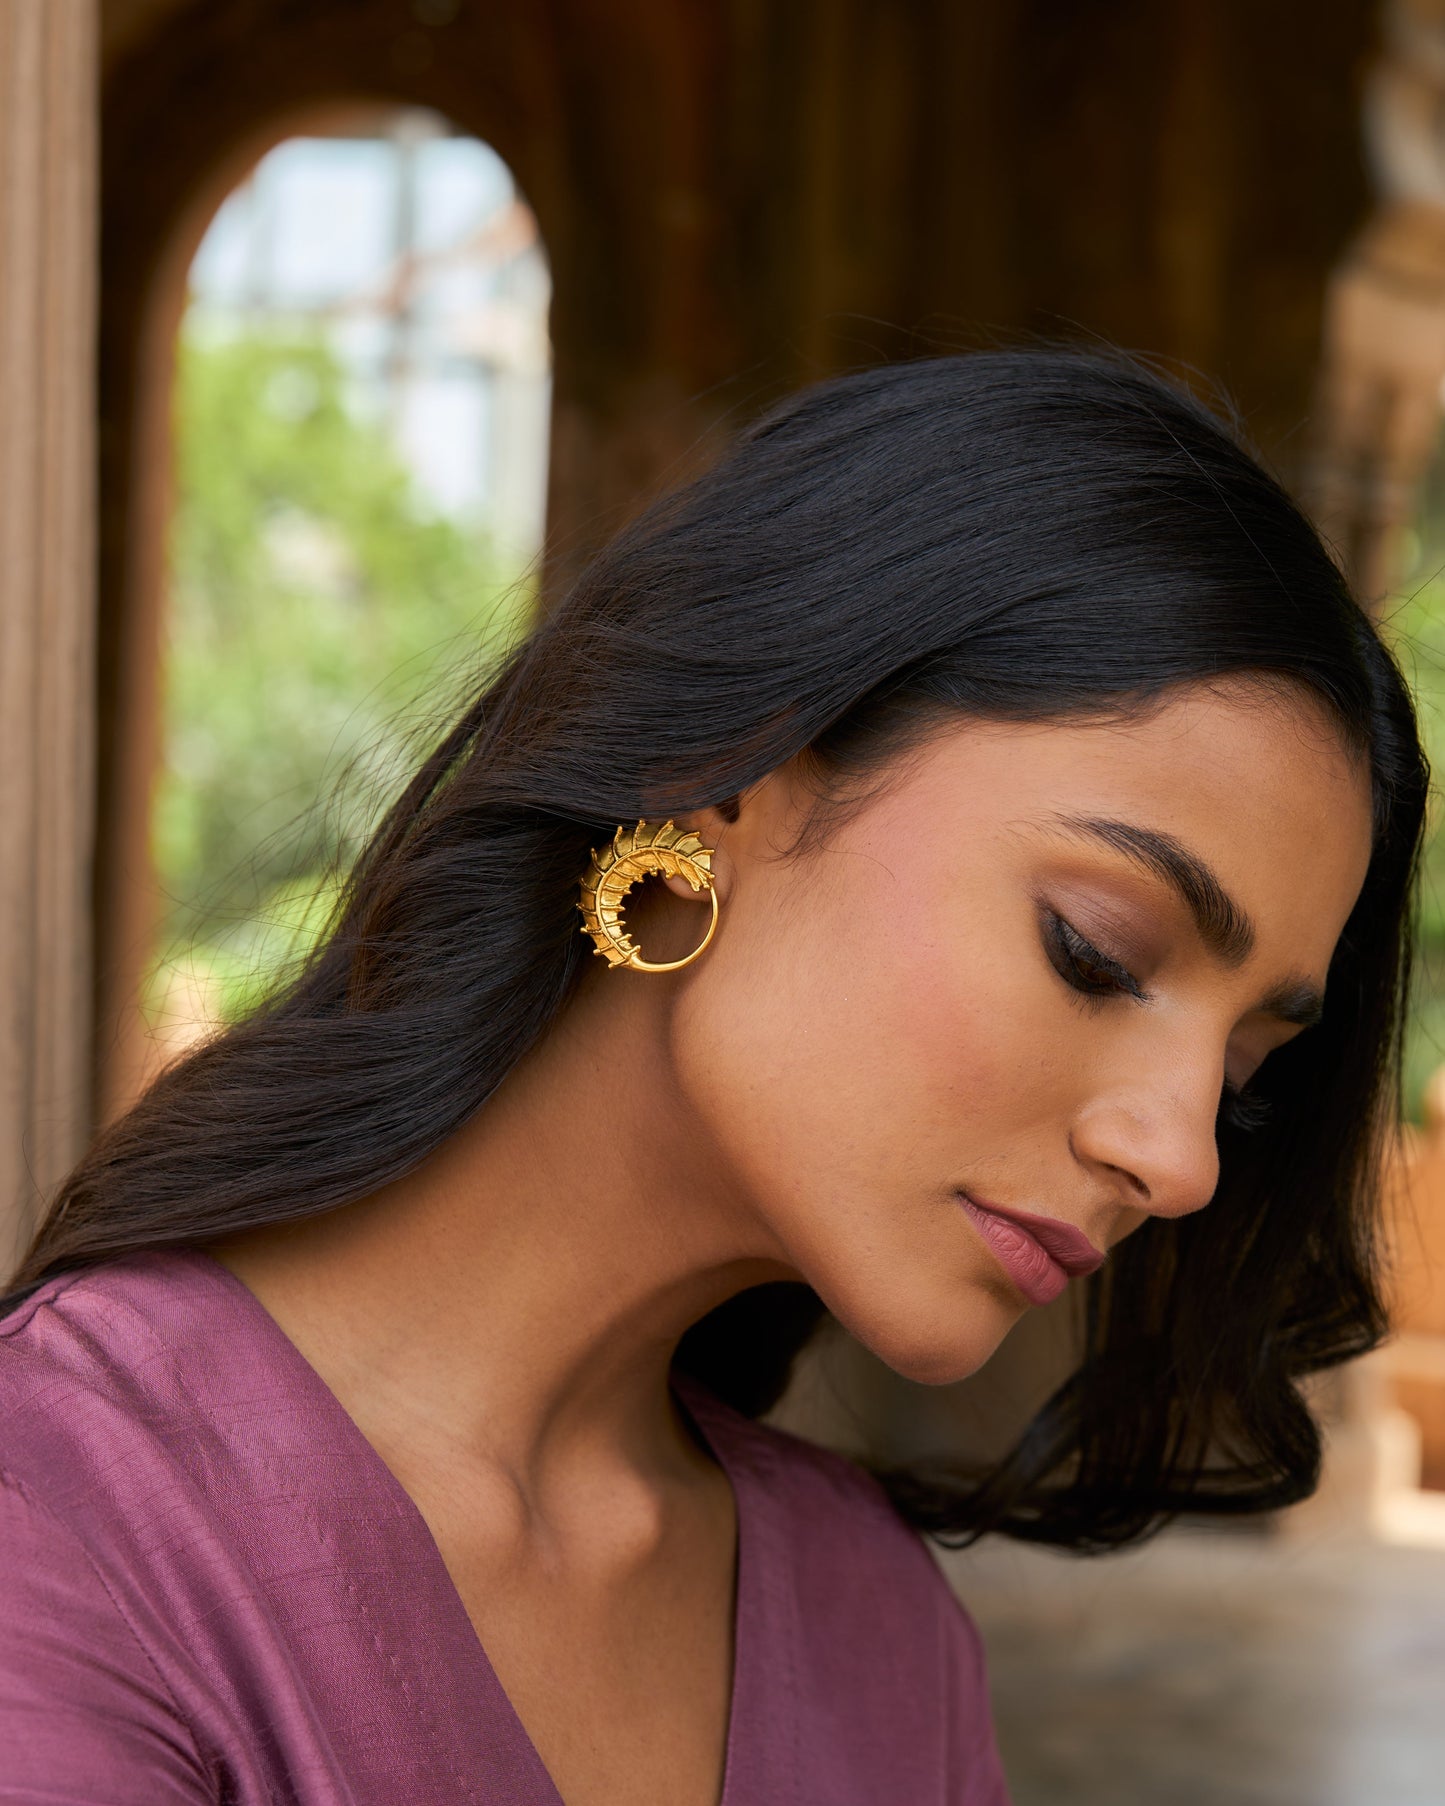 trueBrowns 22K Gold-Plated Circular 3D Leaf Earrings